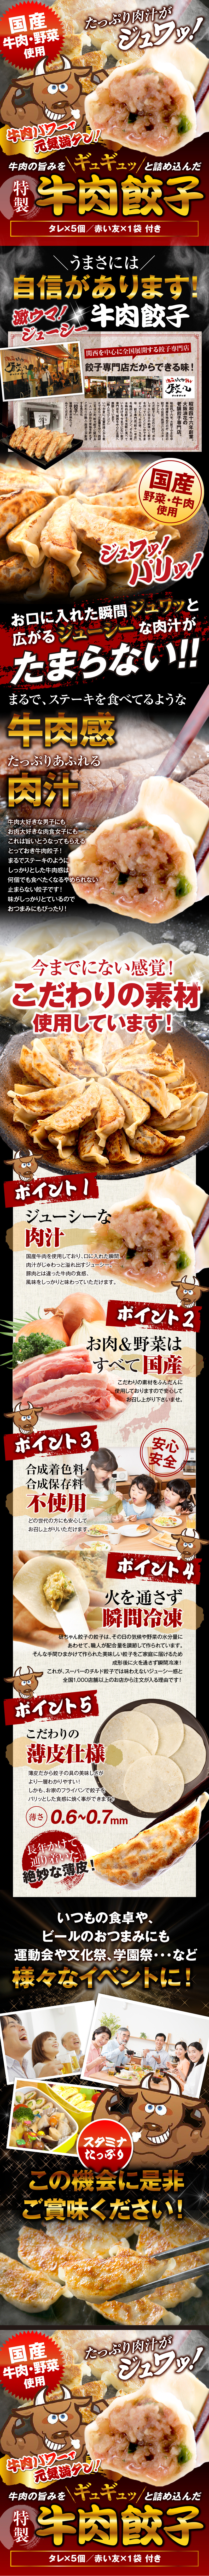 特製牛肉餃子_pc_1